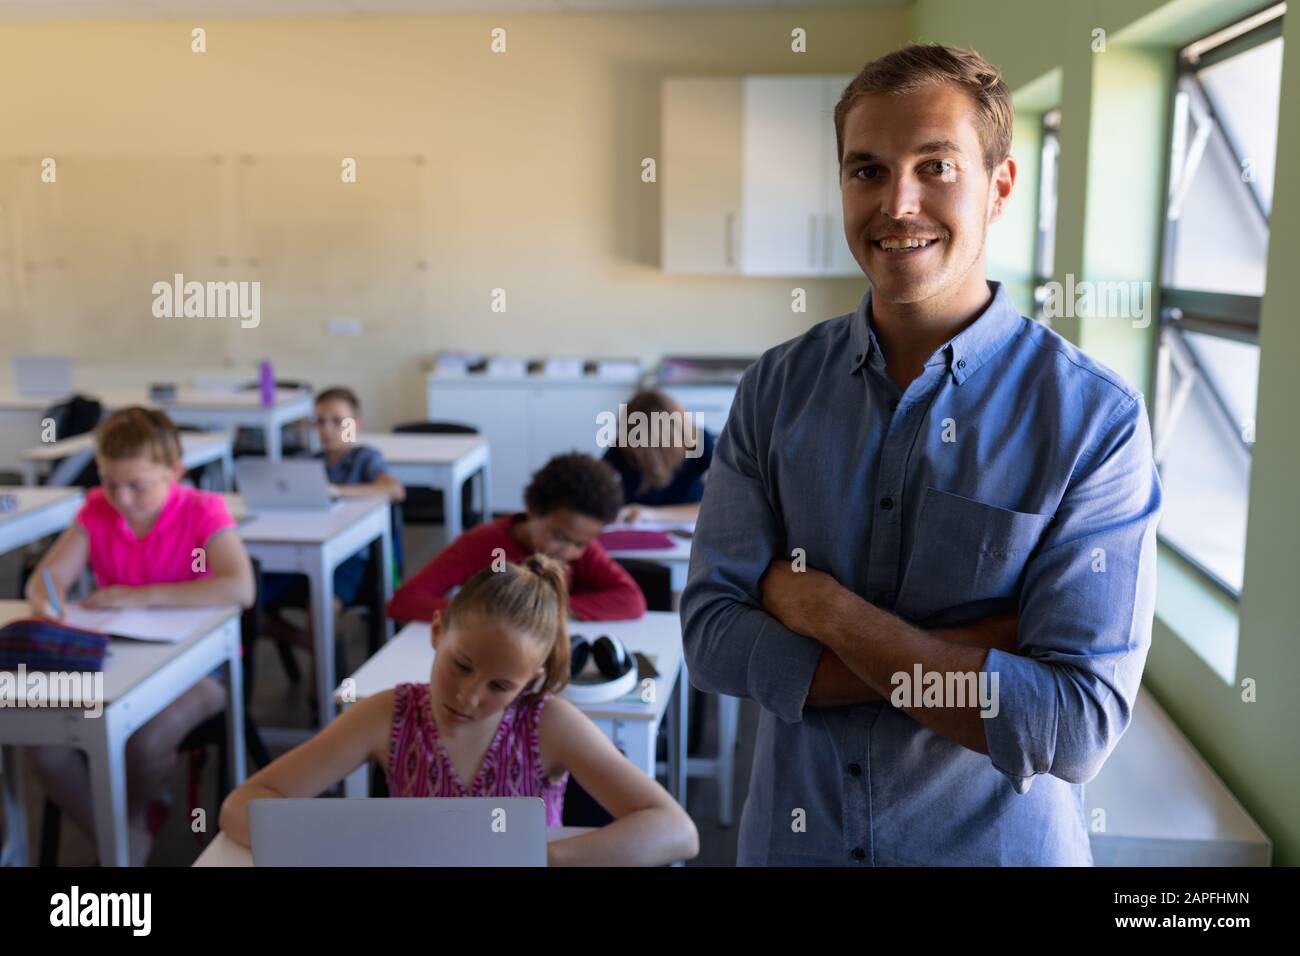 Professeur d'école masculine debout avec des bras croisés dans une classe d'école primaire Banque D'Images